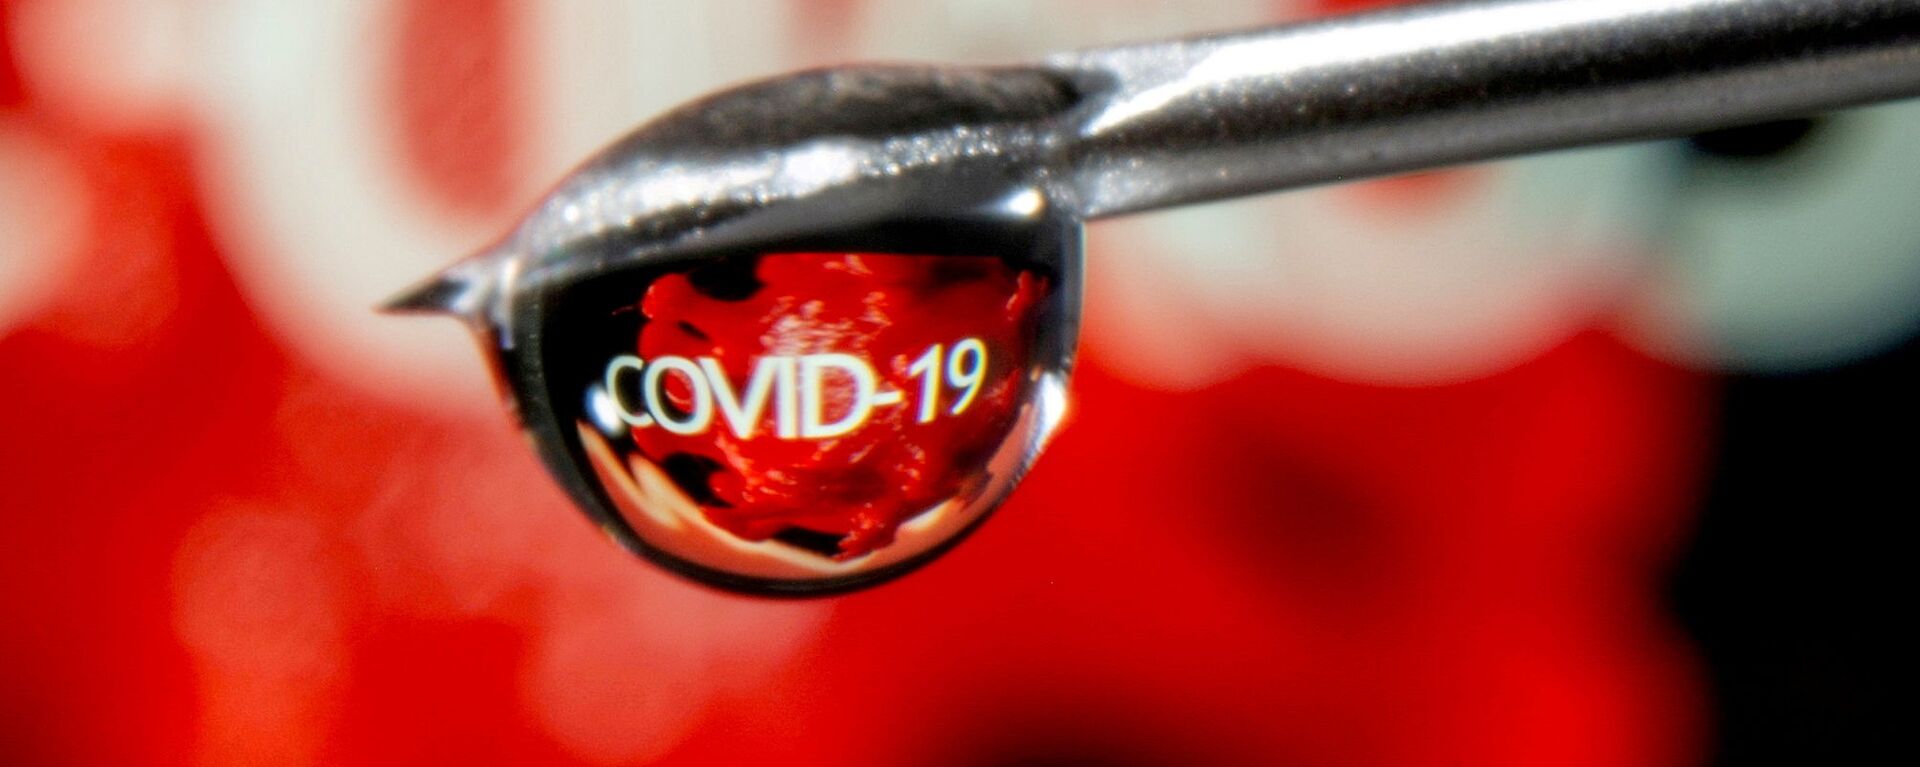 Từ COVID-19 phản ánh trong một giọt ở đầu ống kim tiêm - Sputnik Việt Nam, 1920, 02.07.2021